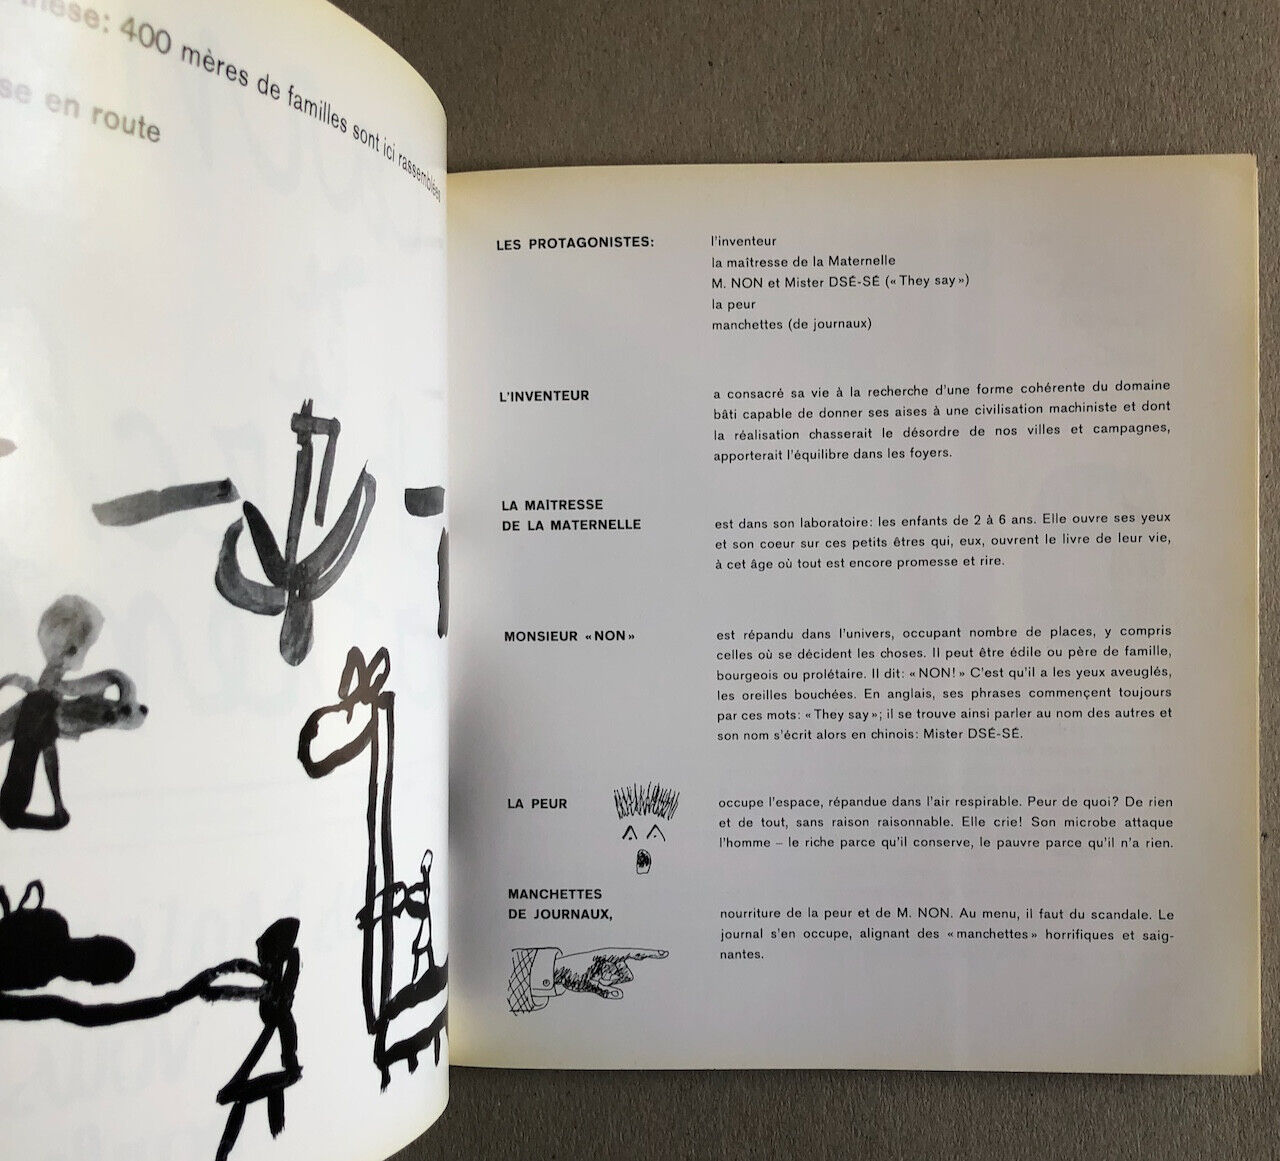 Le Corbusier — Les Maternelles vous parlent — é.o. — Denoël/Gonthier — 1968.